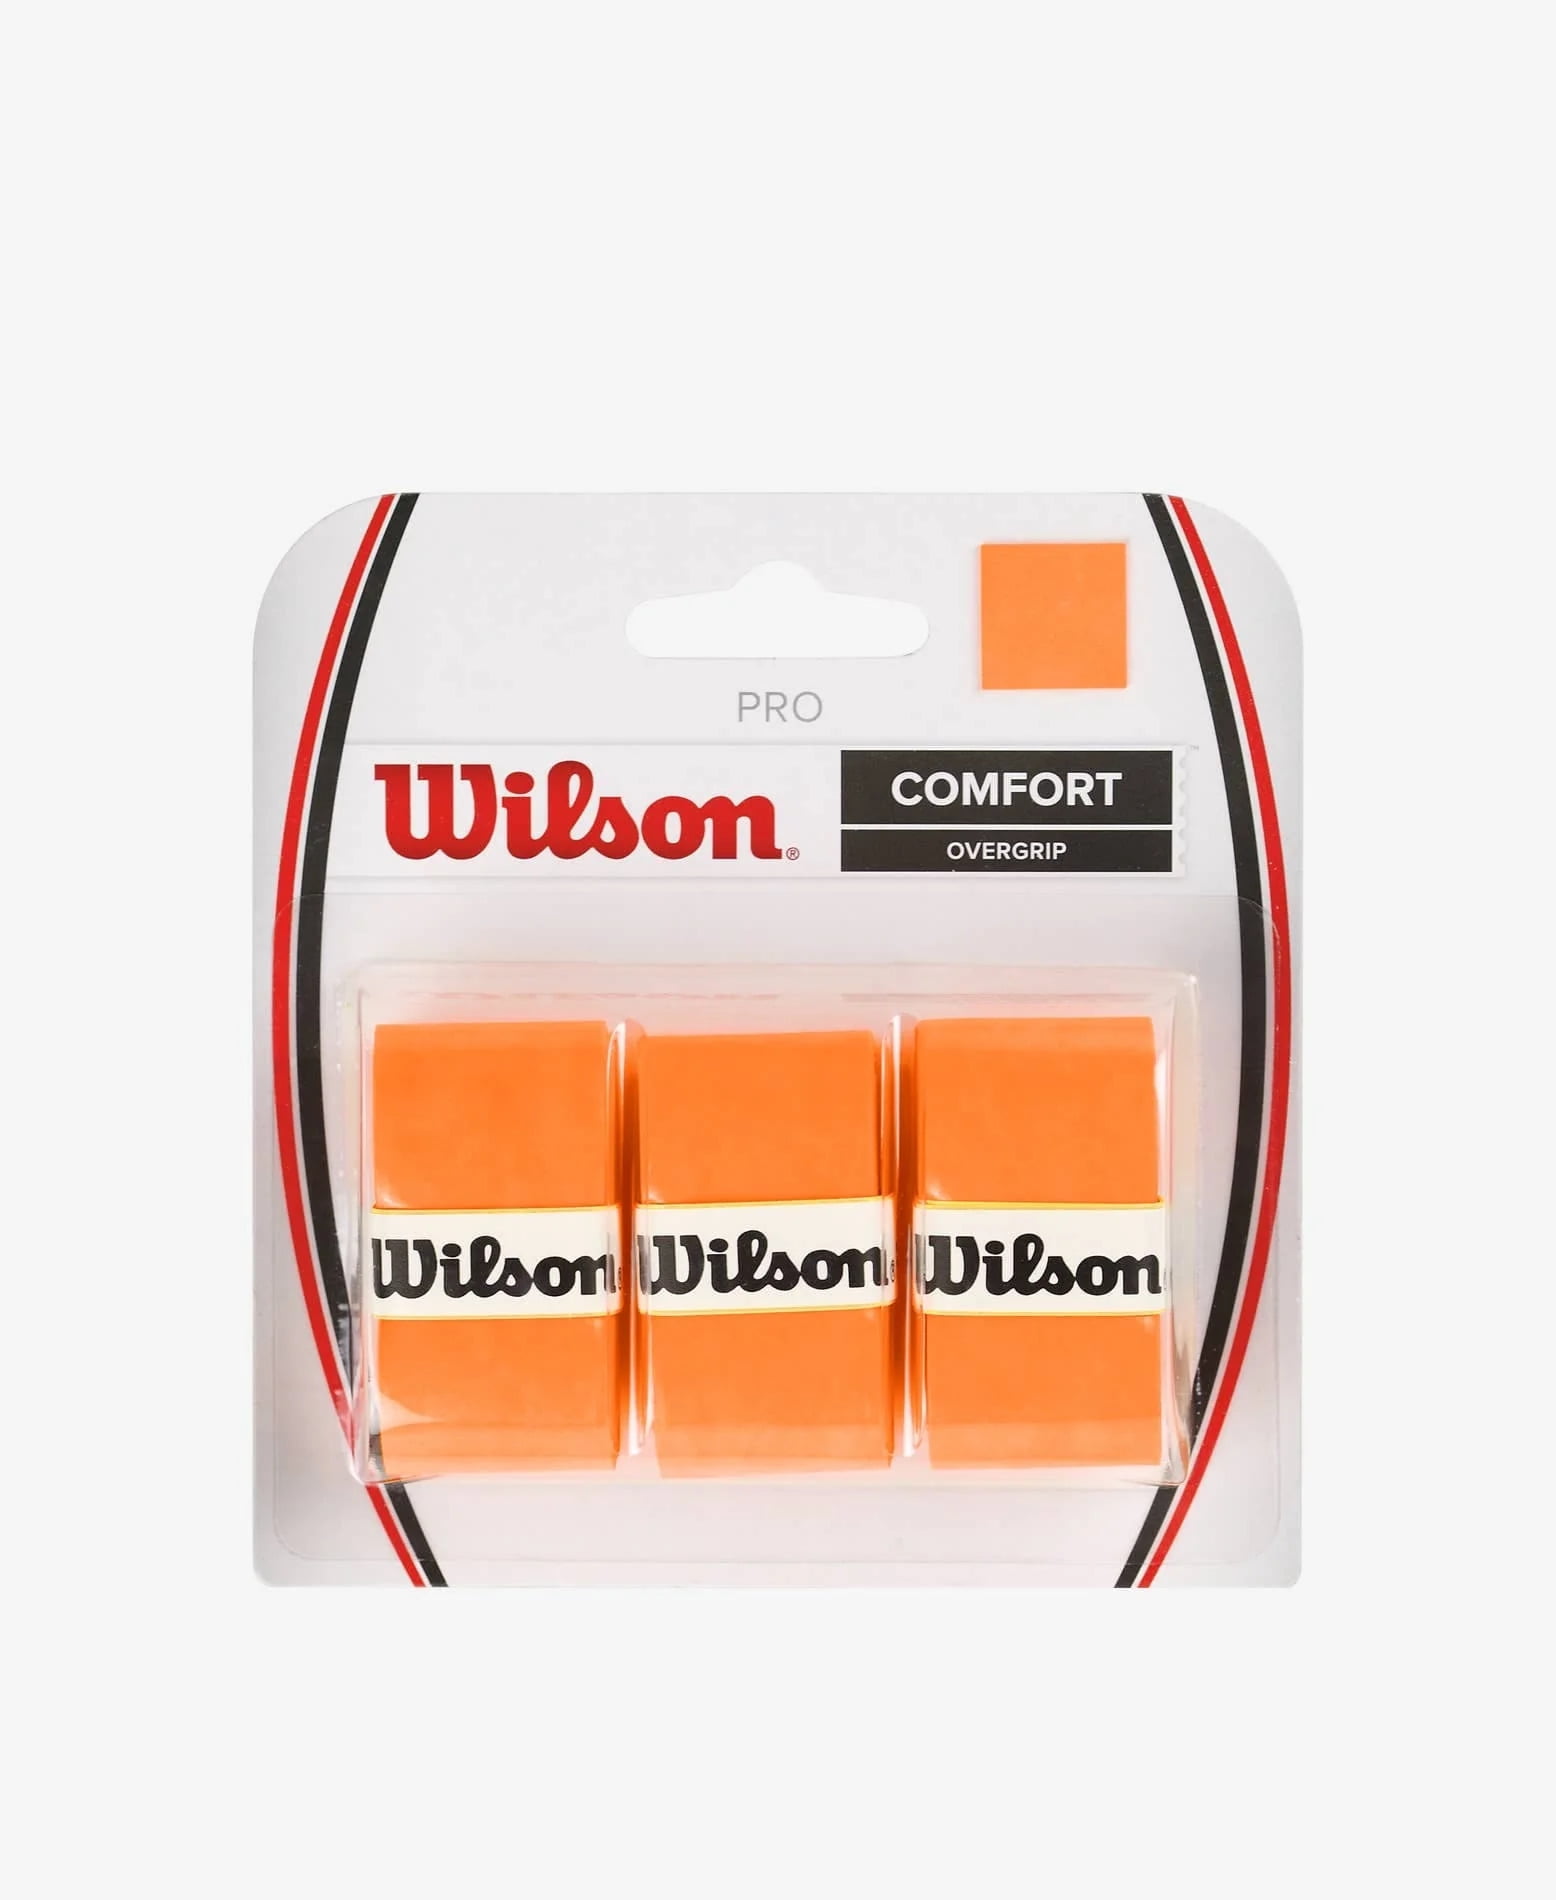 Wilson Comfort Pro Blancos ⚡⚡ El Agarre Perfecto!